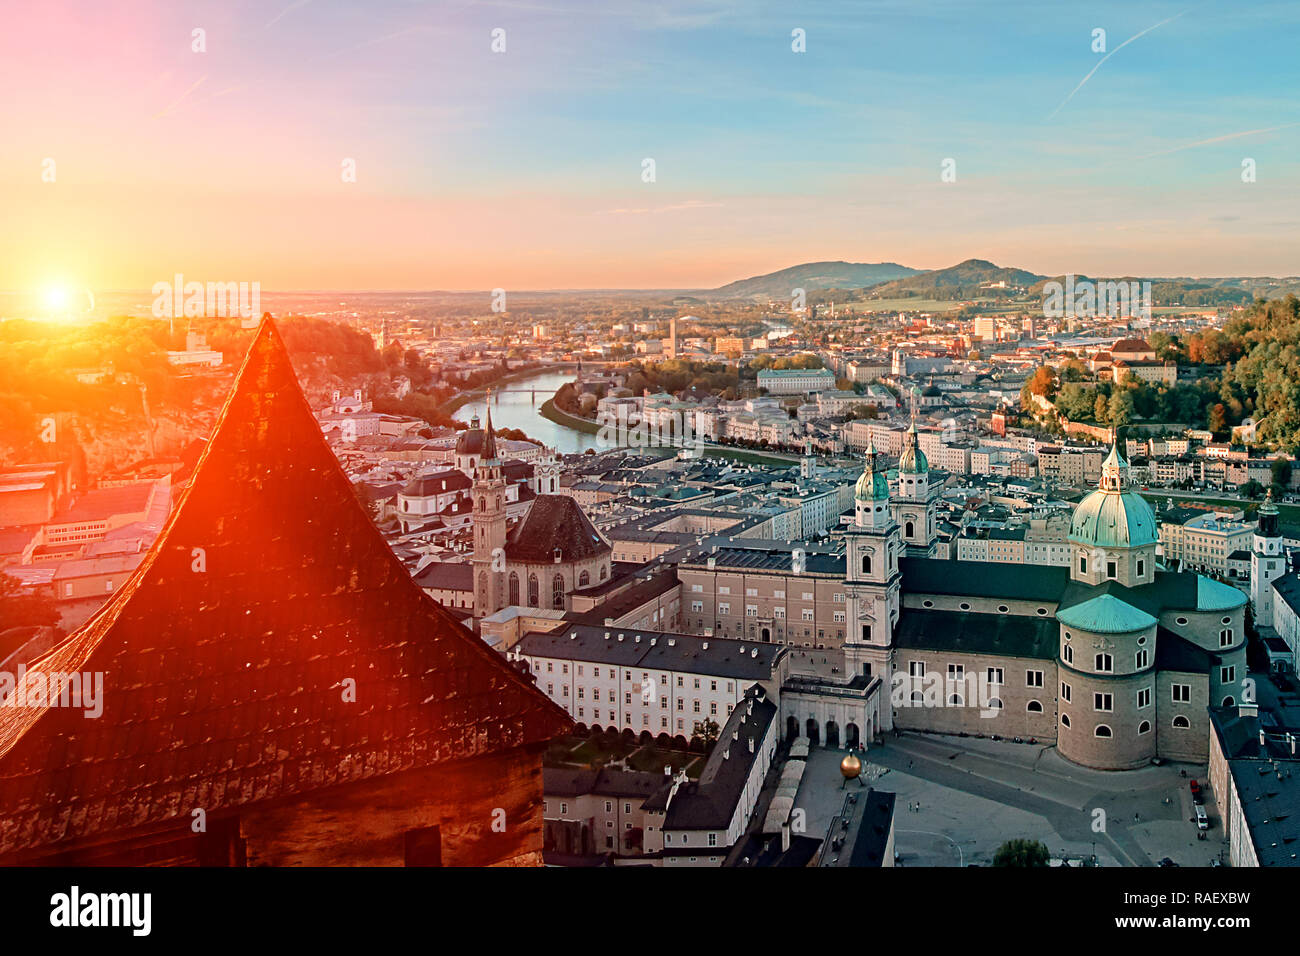 Schönen Sonnenuntergang Blick auf Salzburg, Österreich, Europa. Stadt in den Alpen Mozarts Geburt. Panoramablick auf die Skyline von Salzburg Festung Hohensalzburg Stockfoto